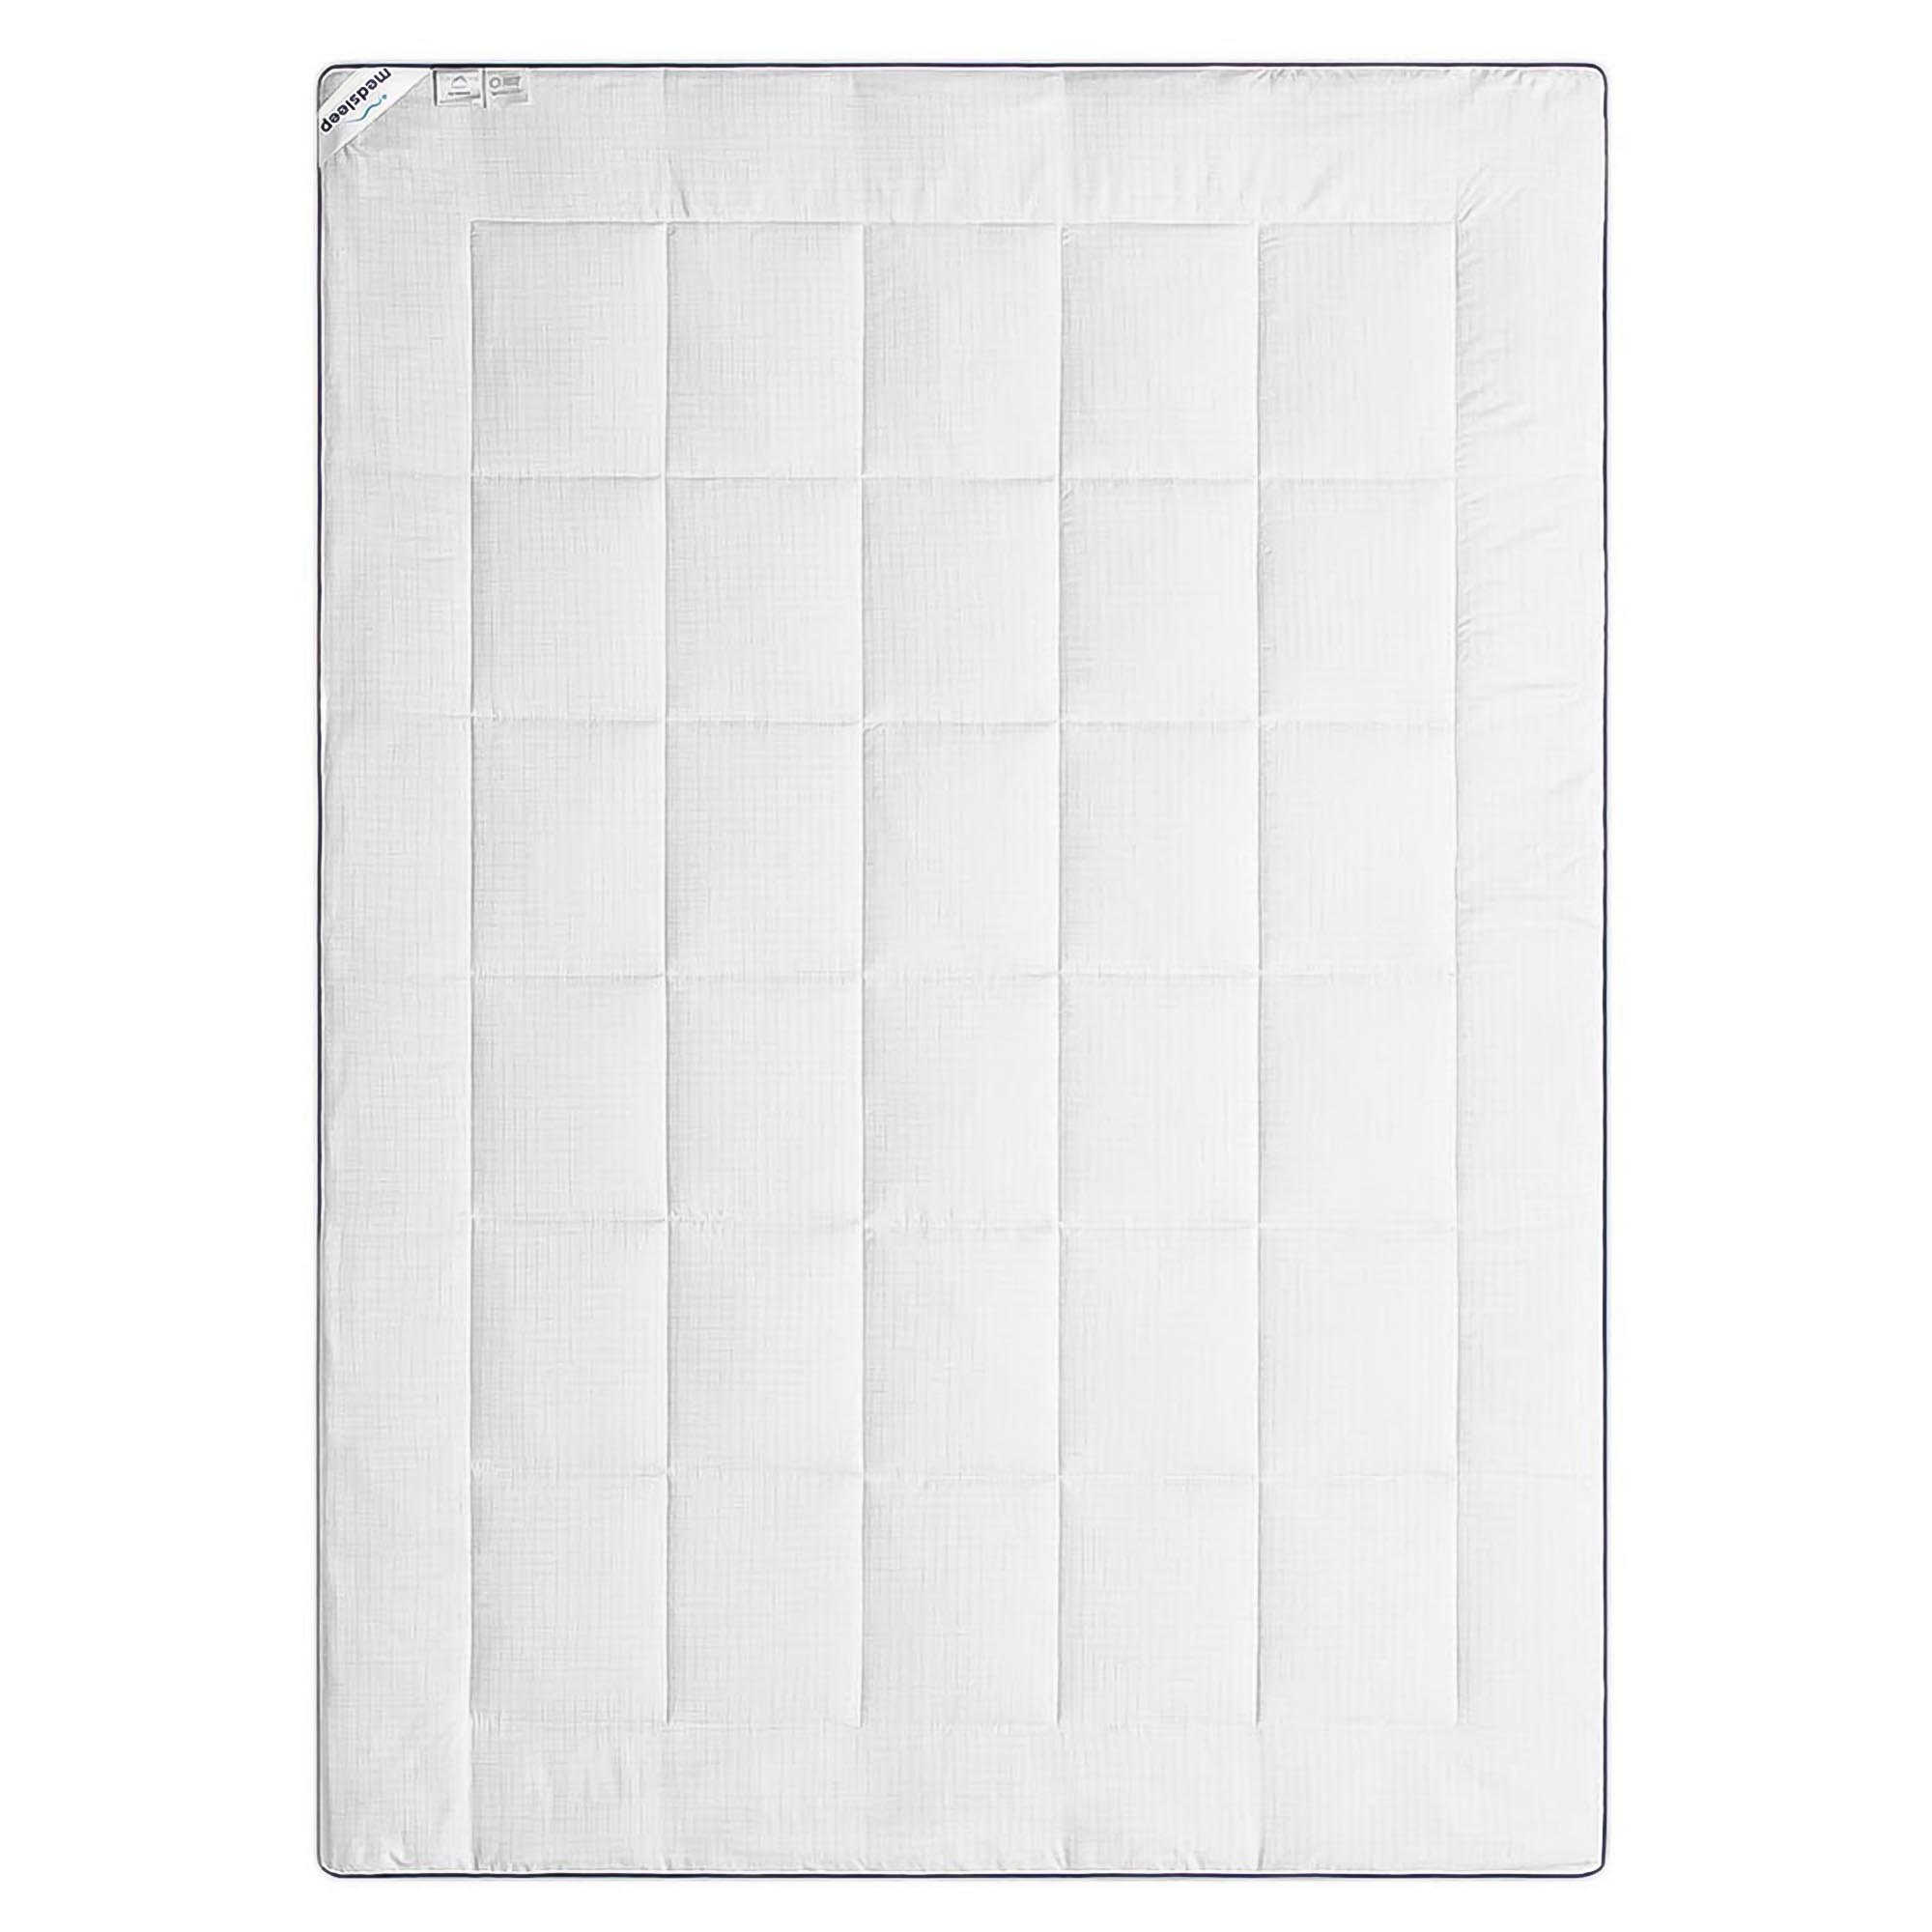 Одеяло Medsleep Nubi белое 200х210 см, цвет белый - фото 2